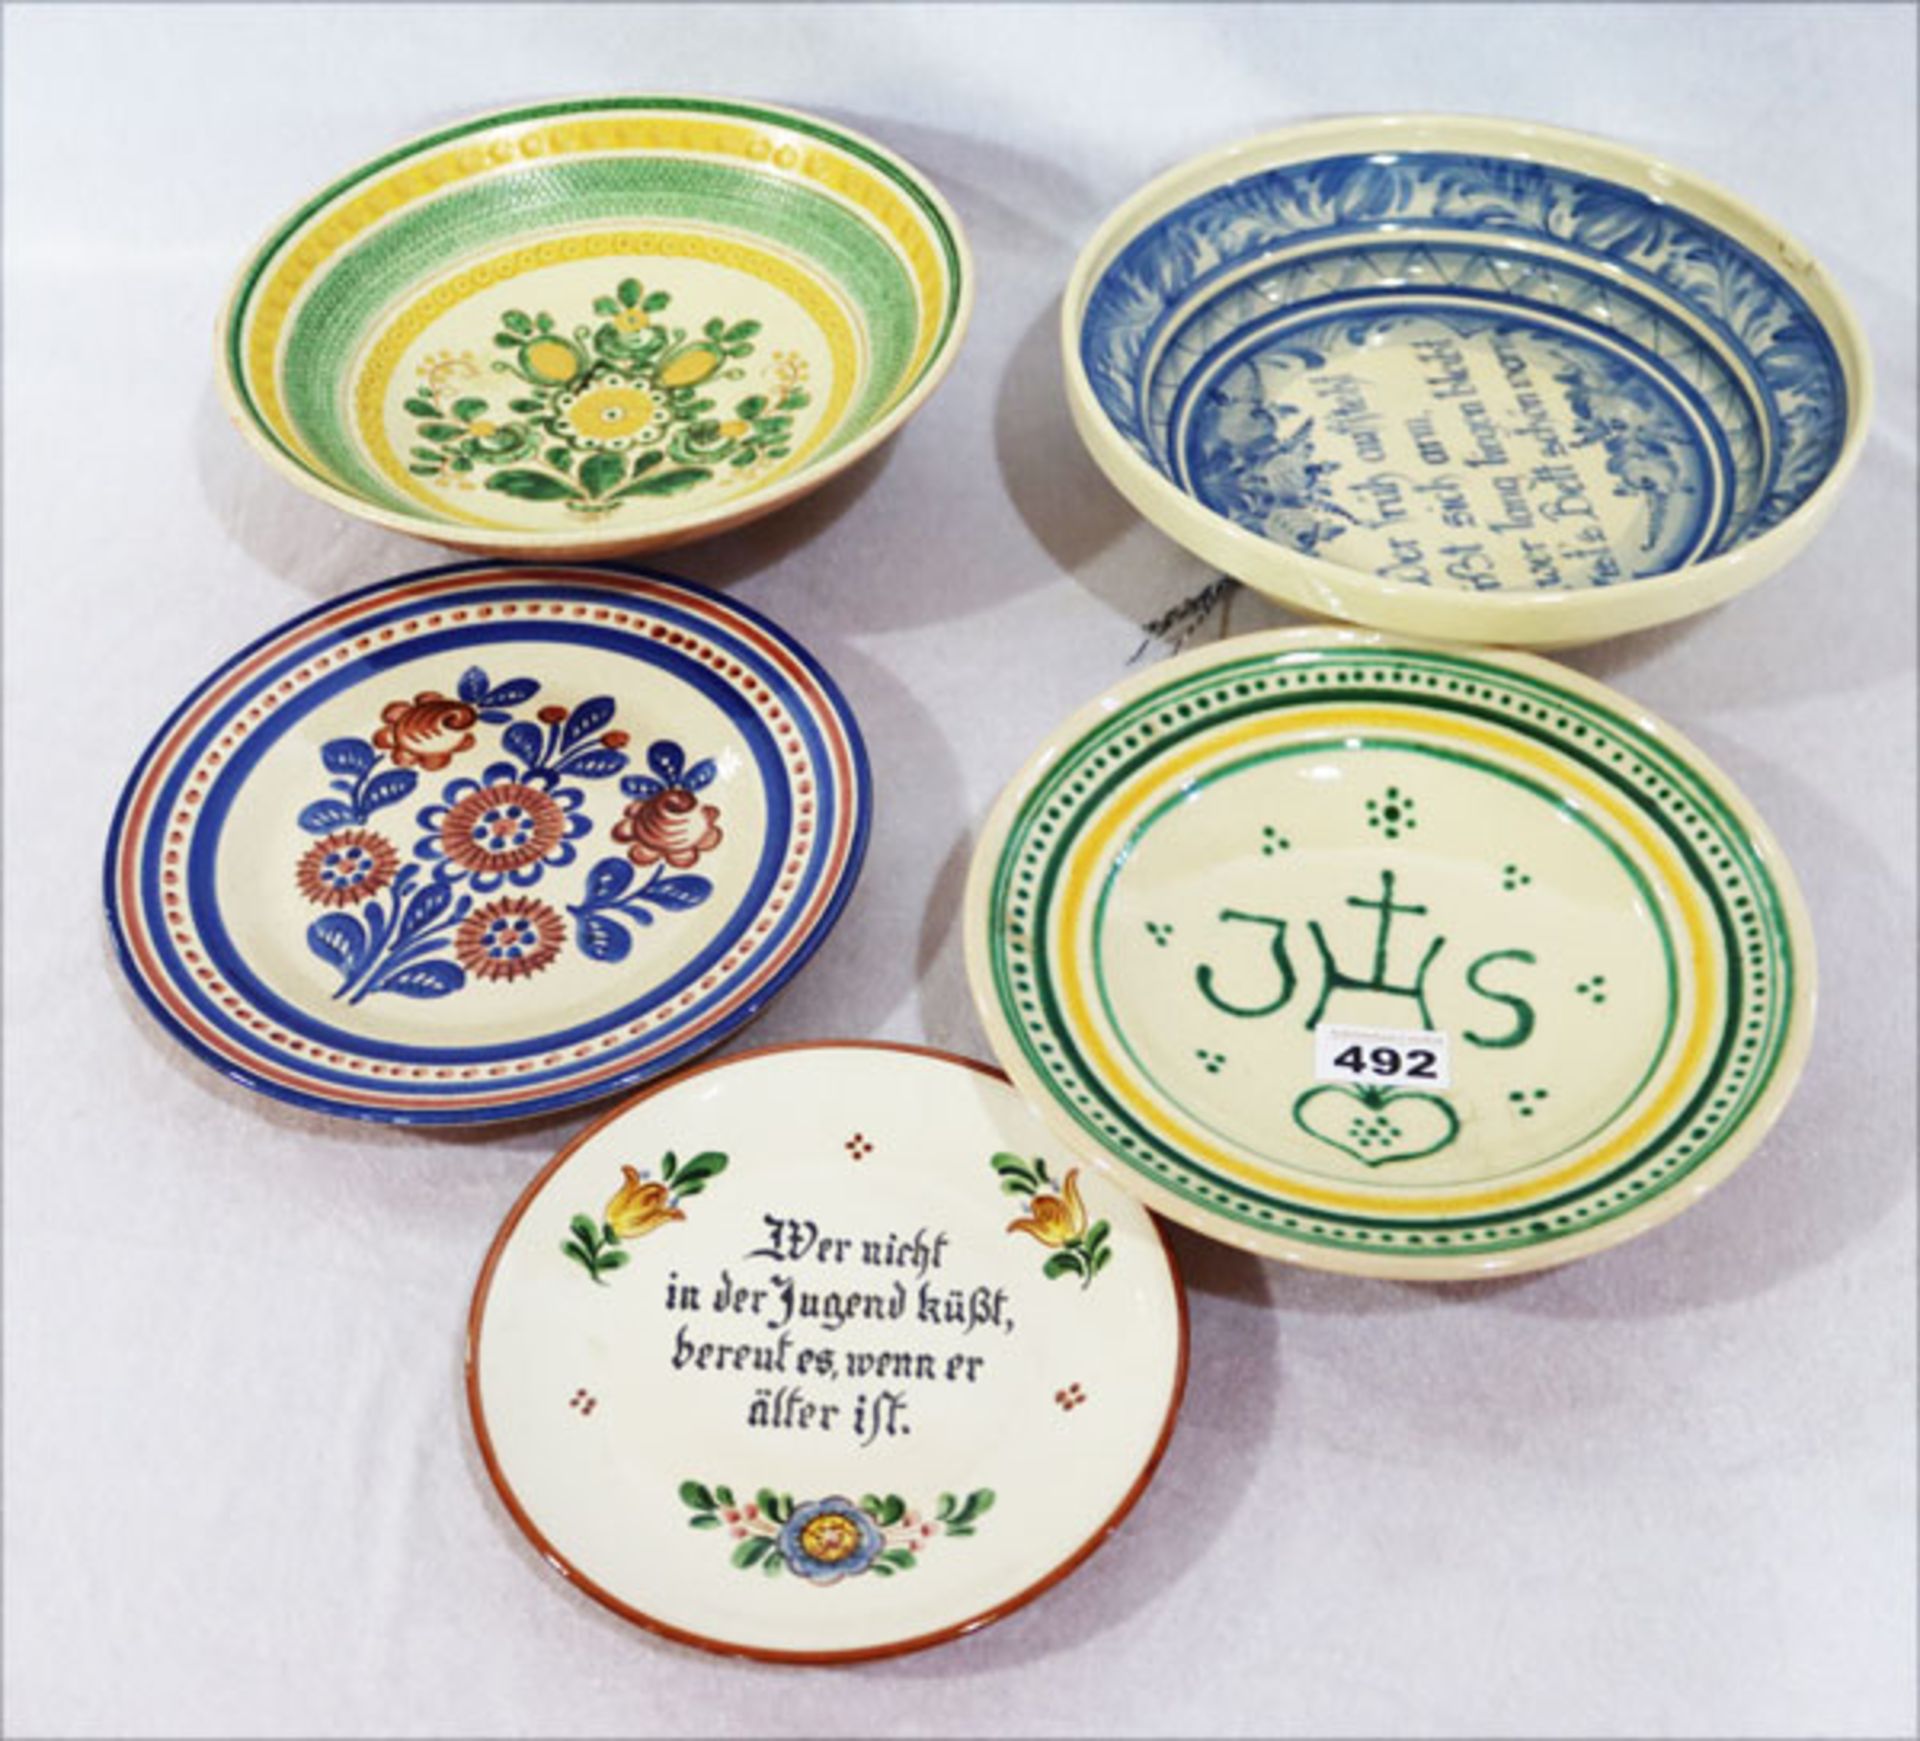 Keramik-Konvolut von 3 Schalen und 2 Teller, diverse Dekore, teils Werkstatt Kagel, Partenkirchen,